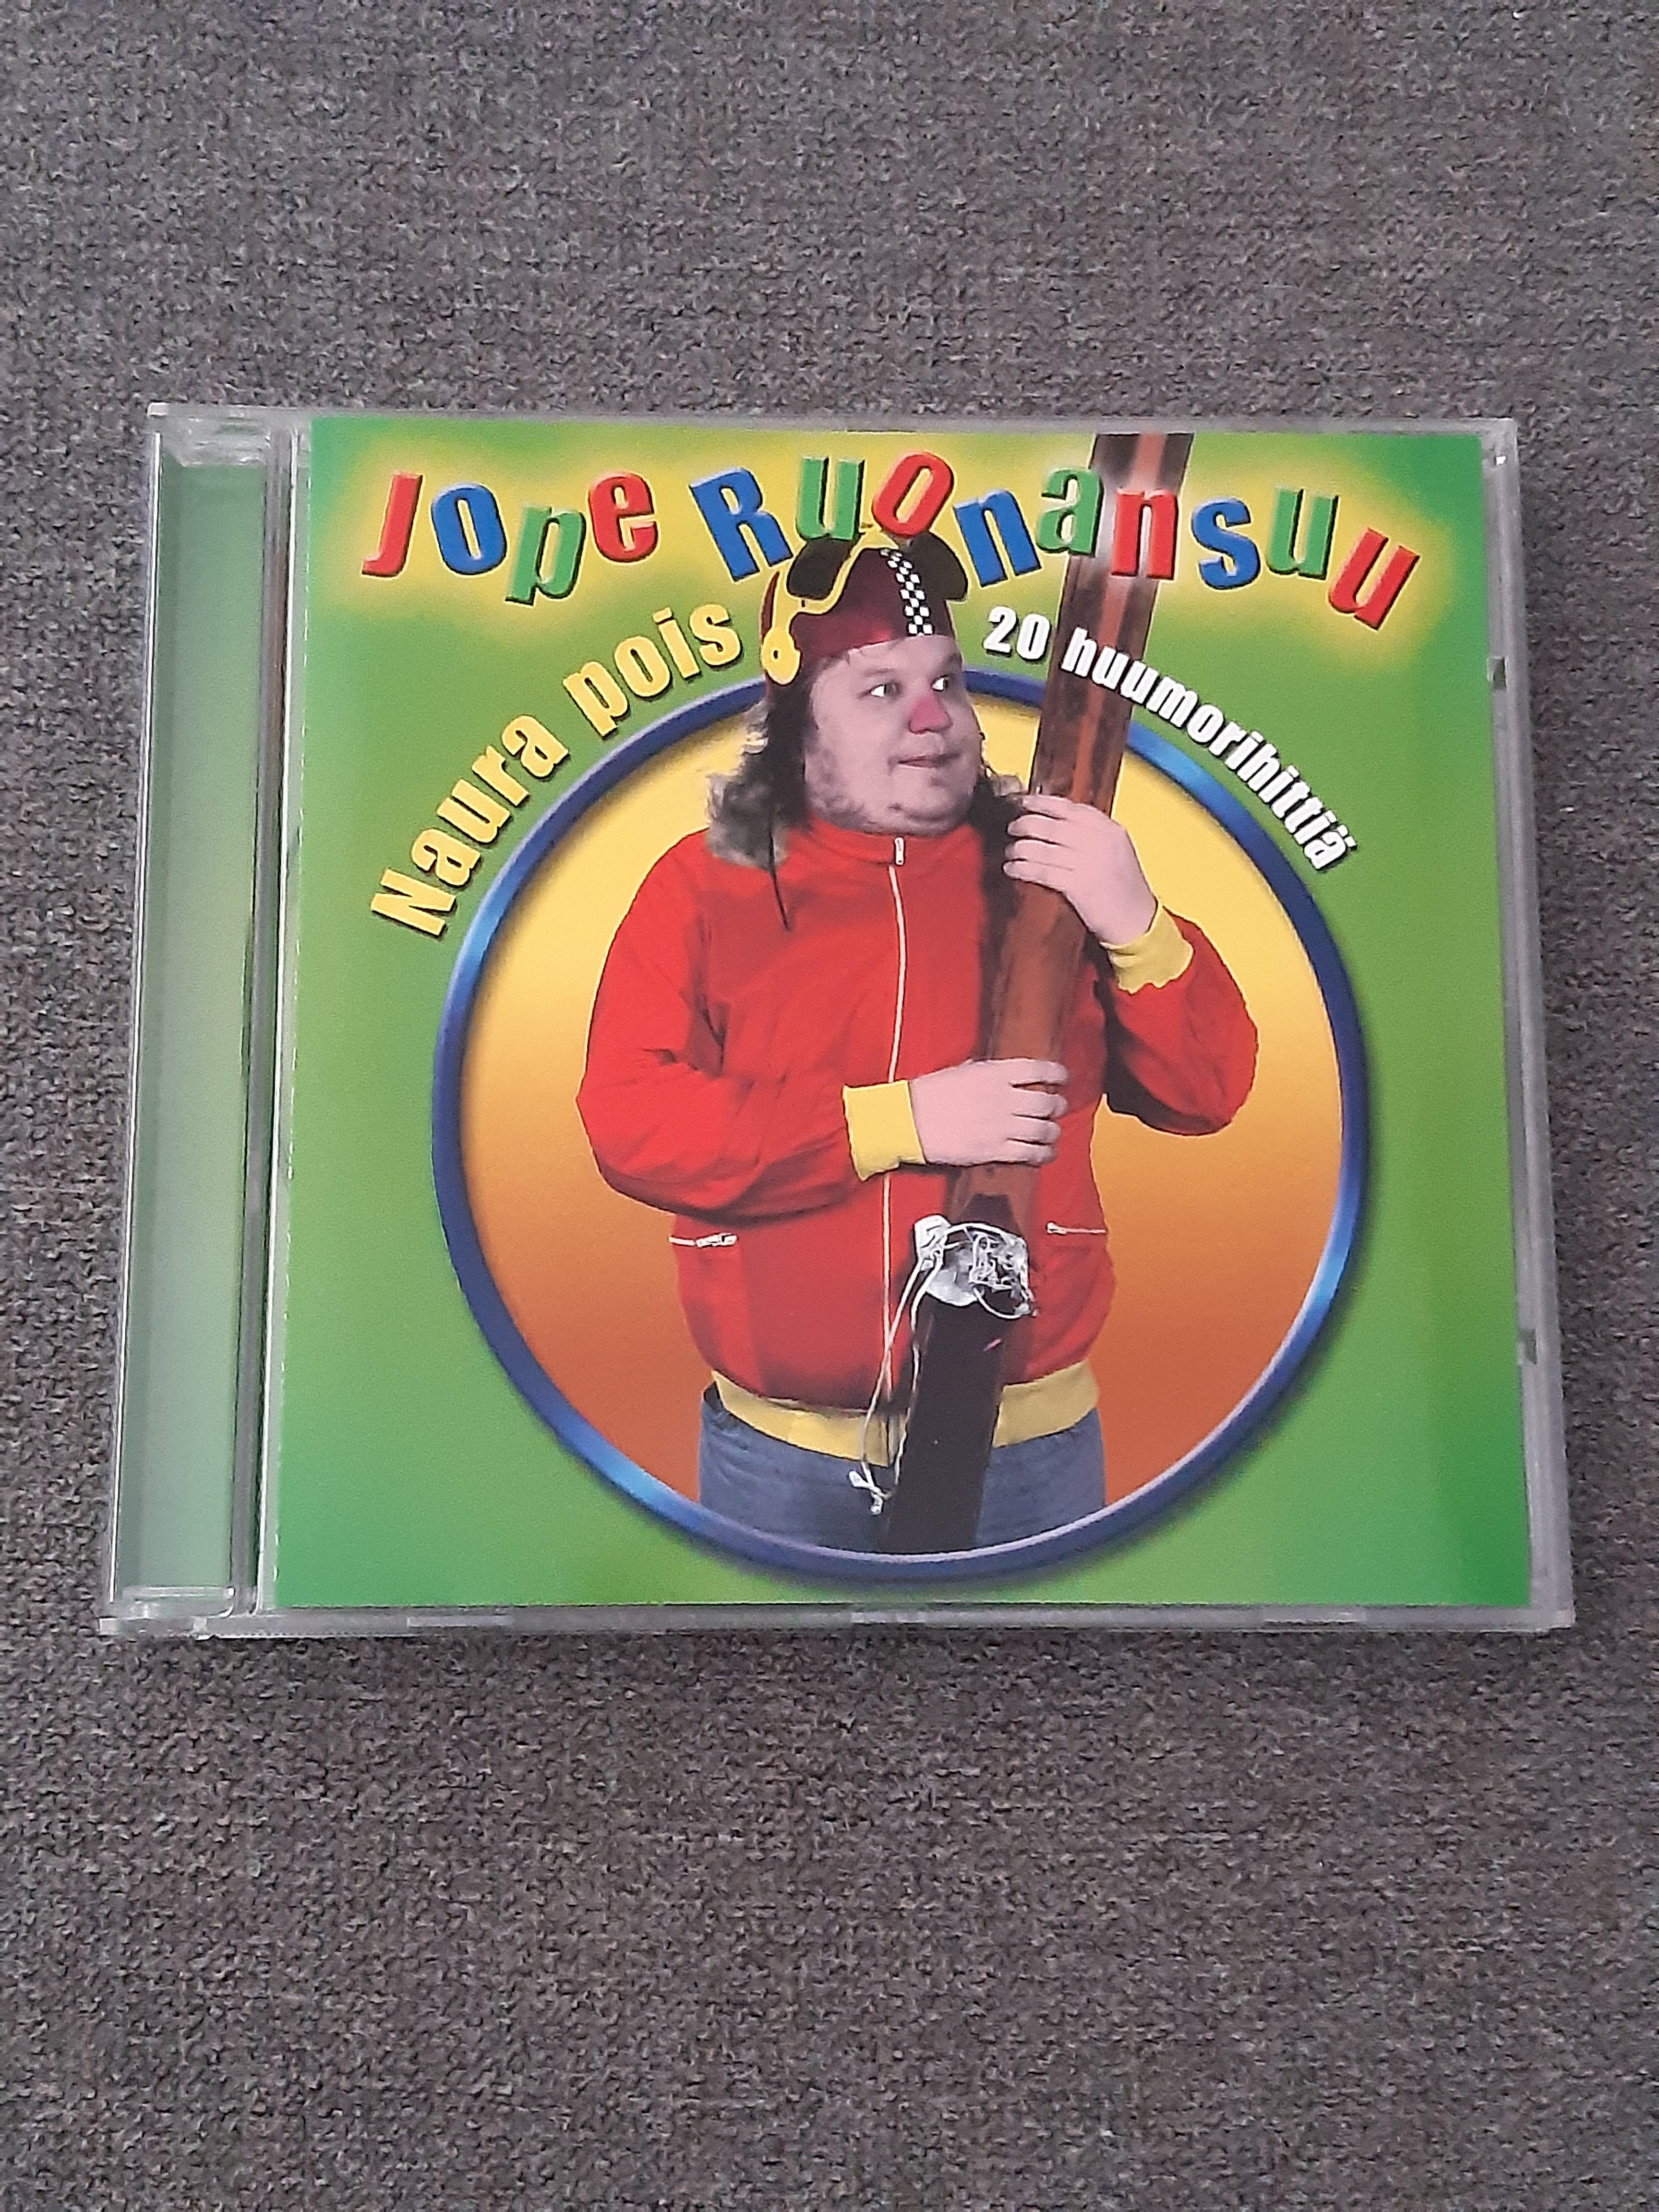 Jope Ruonansuu - Naura pois, 20 huumorihittiä - CD (käytetty)